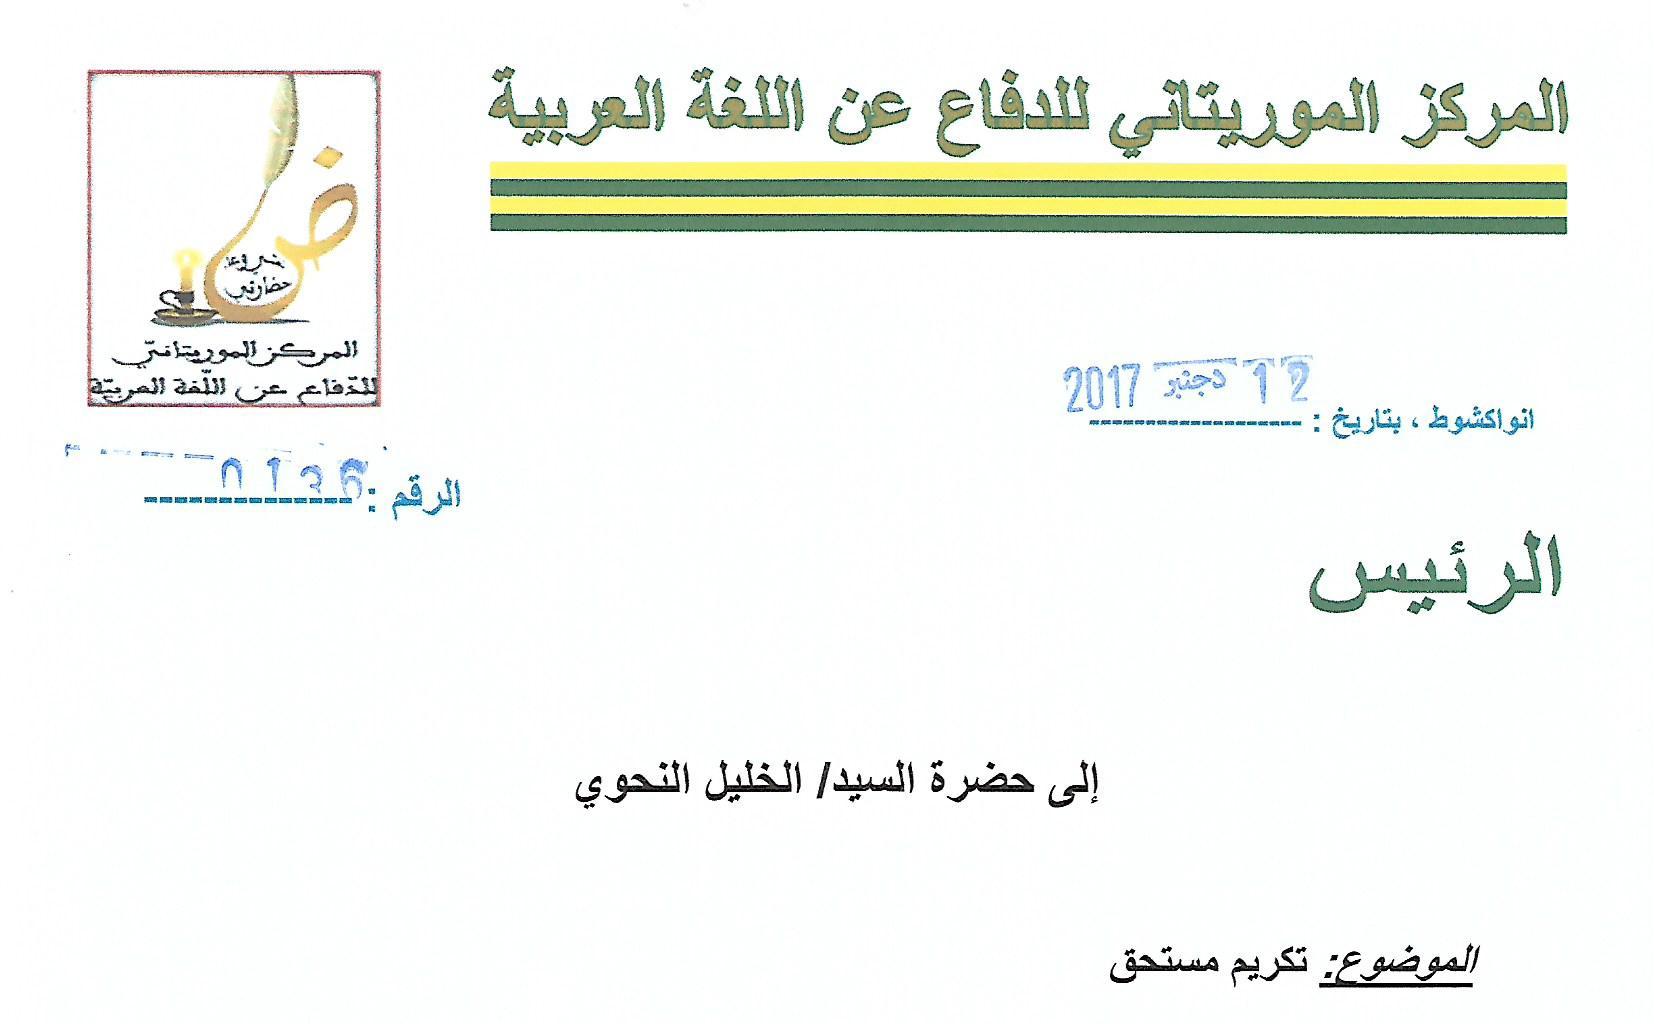 المركز الموريتاني للدفاع عن اللغة العربية يكرم رئيس المجلس الشيخ الخليل النحوي